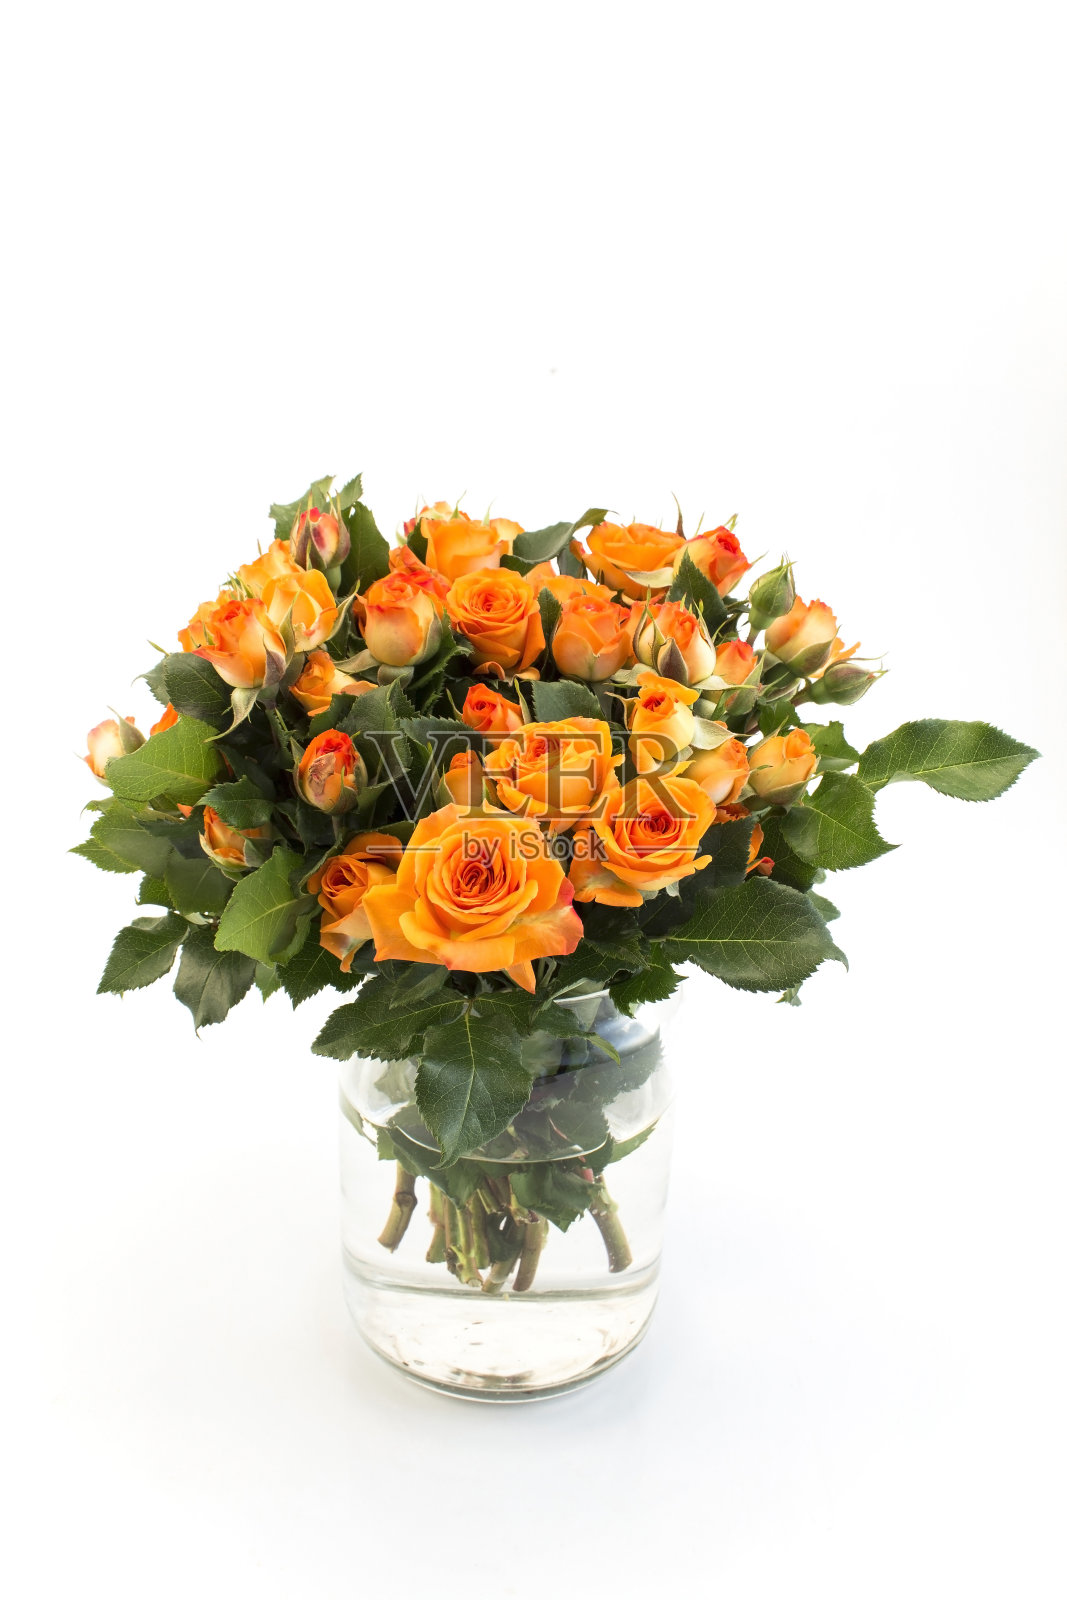 橙色玫瑰花束照片摄影图片